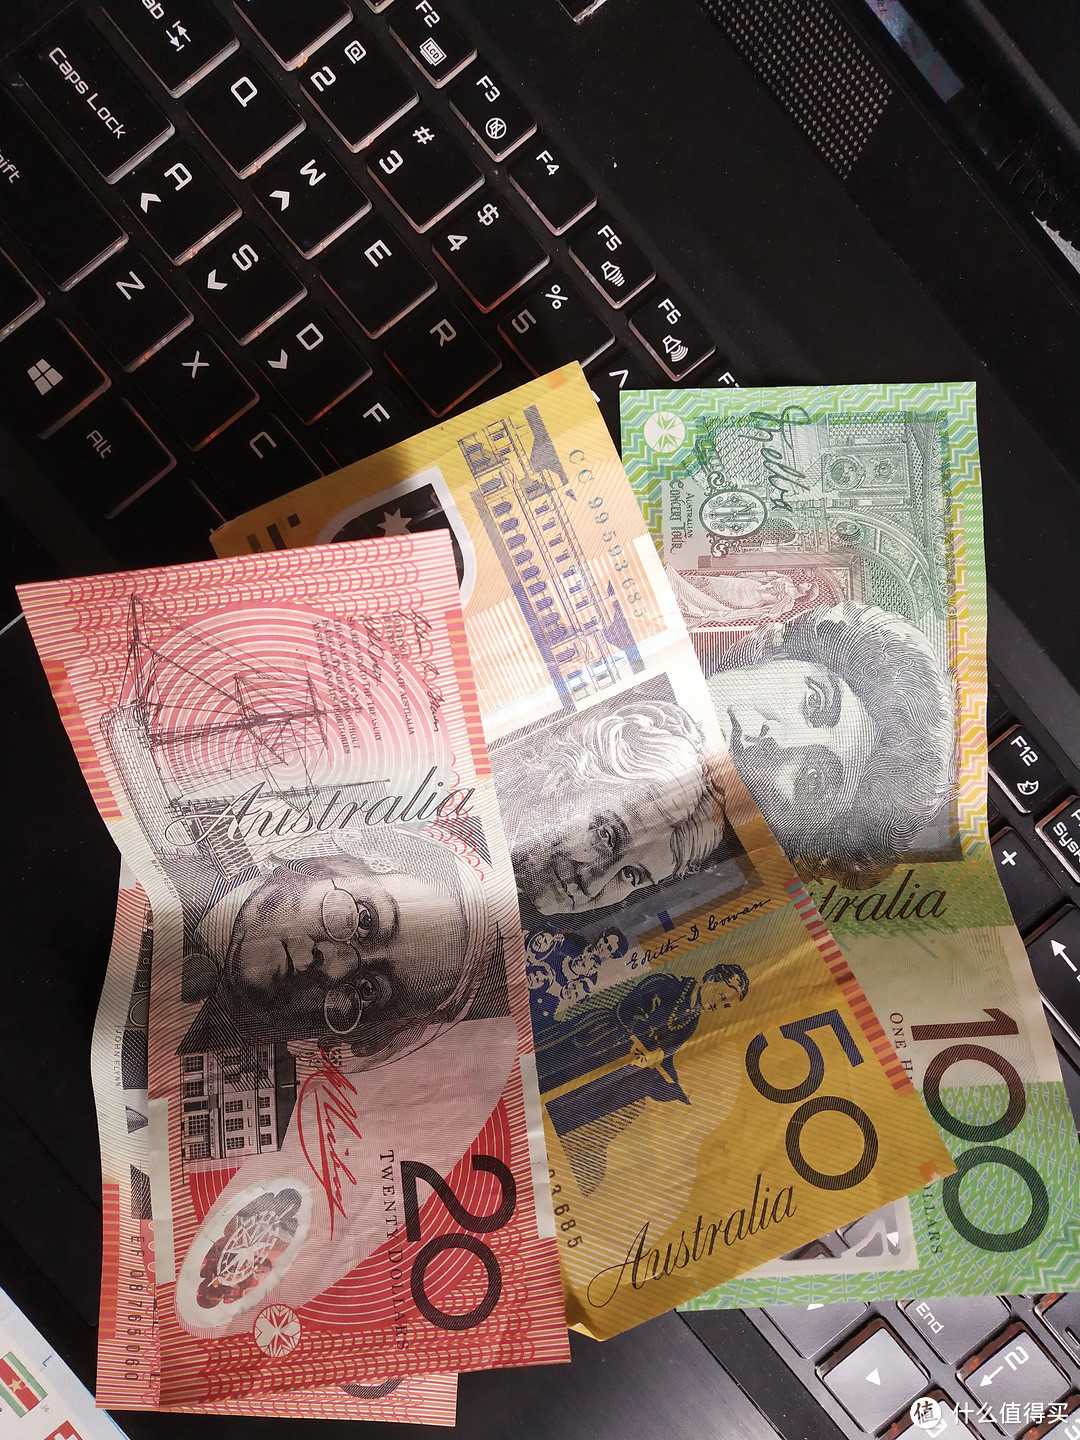 澳大利亚的钞票是合成材质，拥有世界最先进的合成钞票制作技术，多个国家和地区都委托澳大利亚为他们制造钞票，包括香港、印尼、马来西亚、新加坡等等。